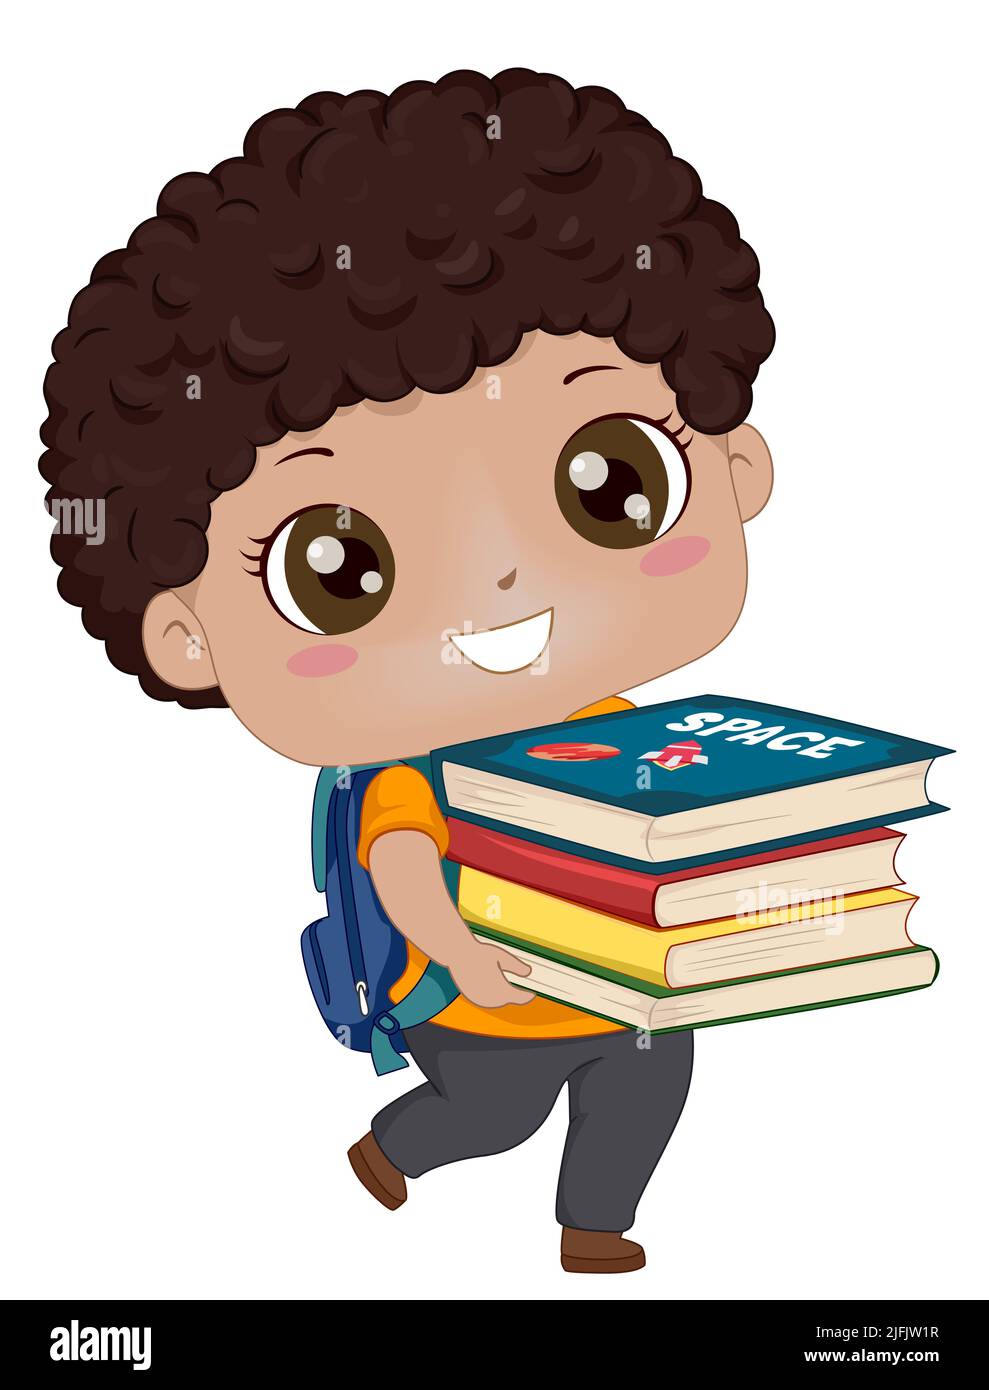 Ilustración de un estudiante de niño afroamericano con bolsa escolar que lleva libros educativos Foto de stock